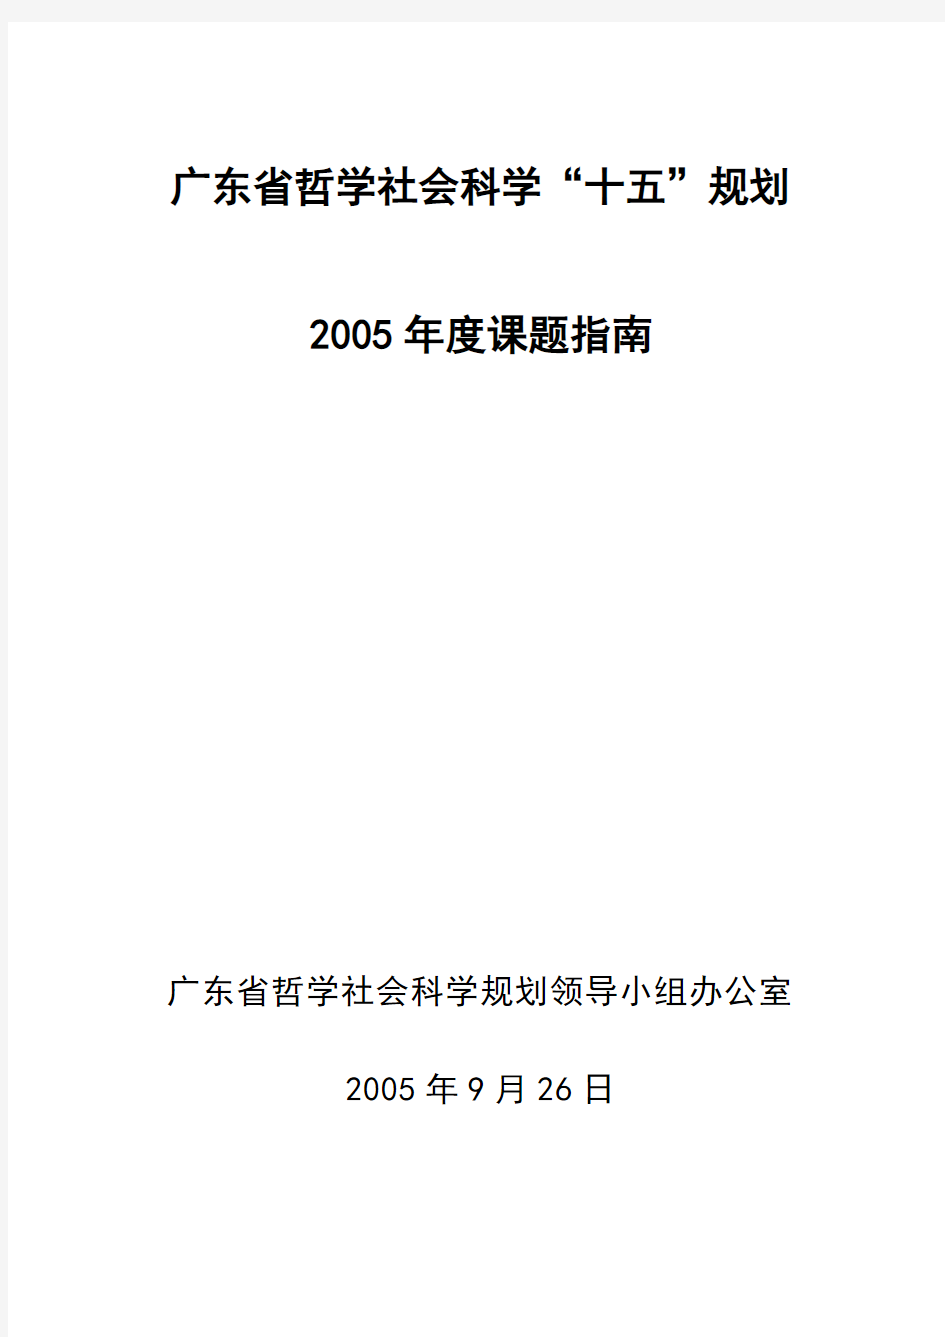 学十五规划2005年度课题指南